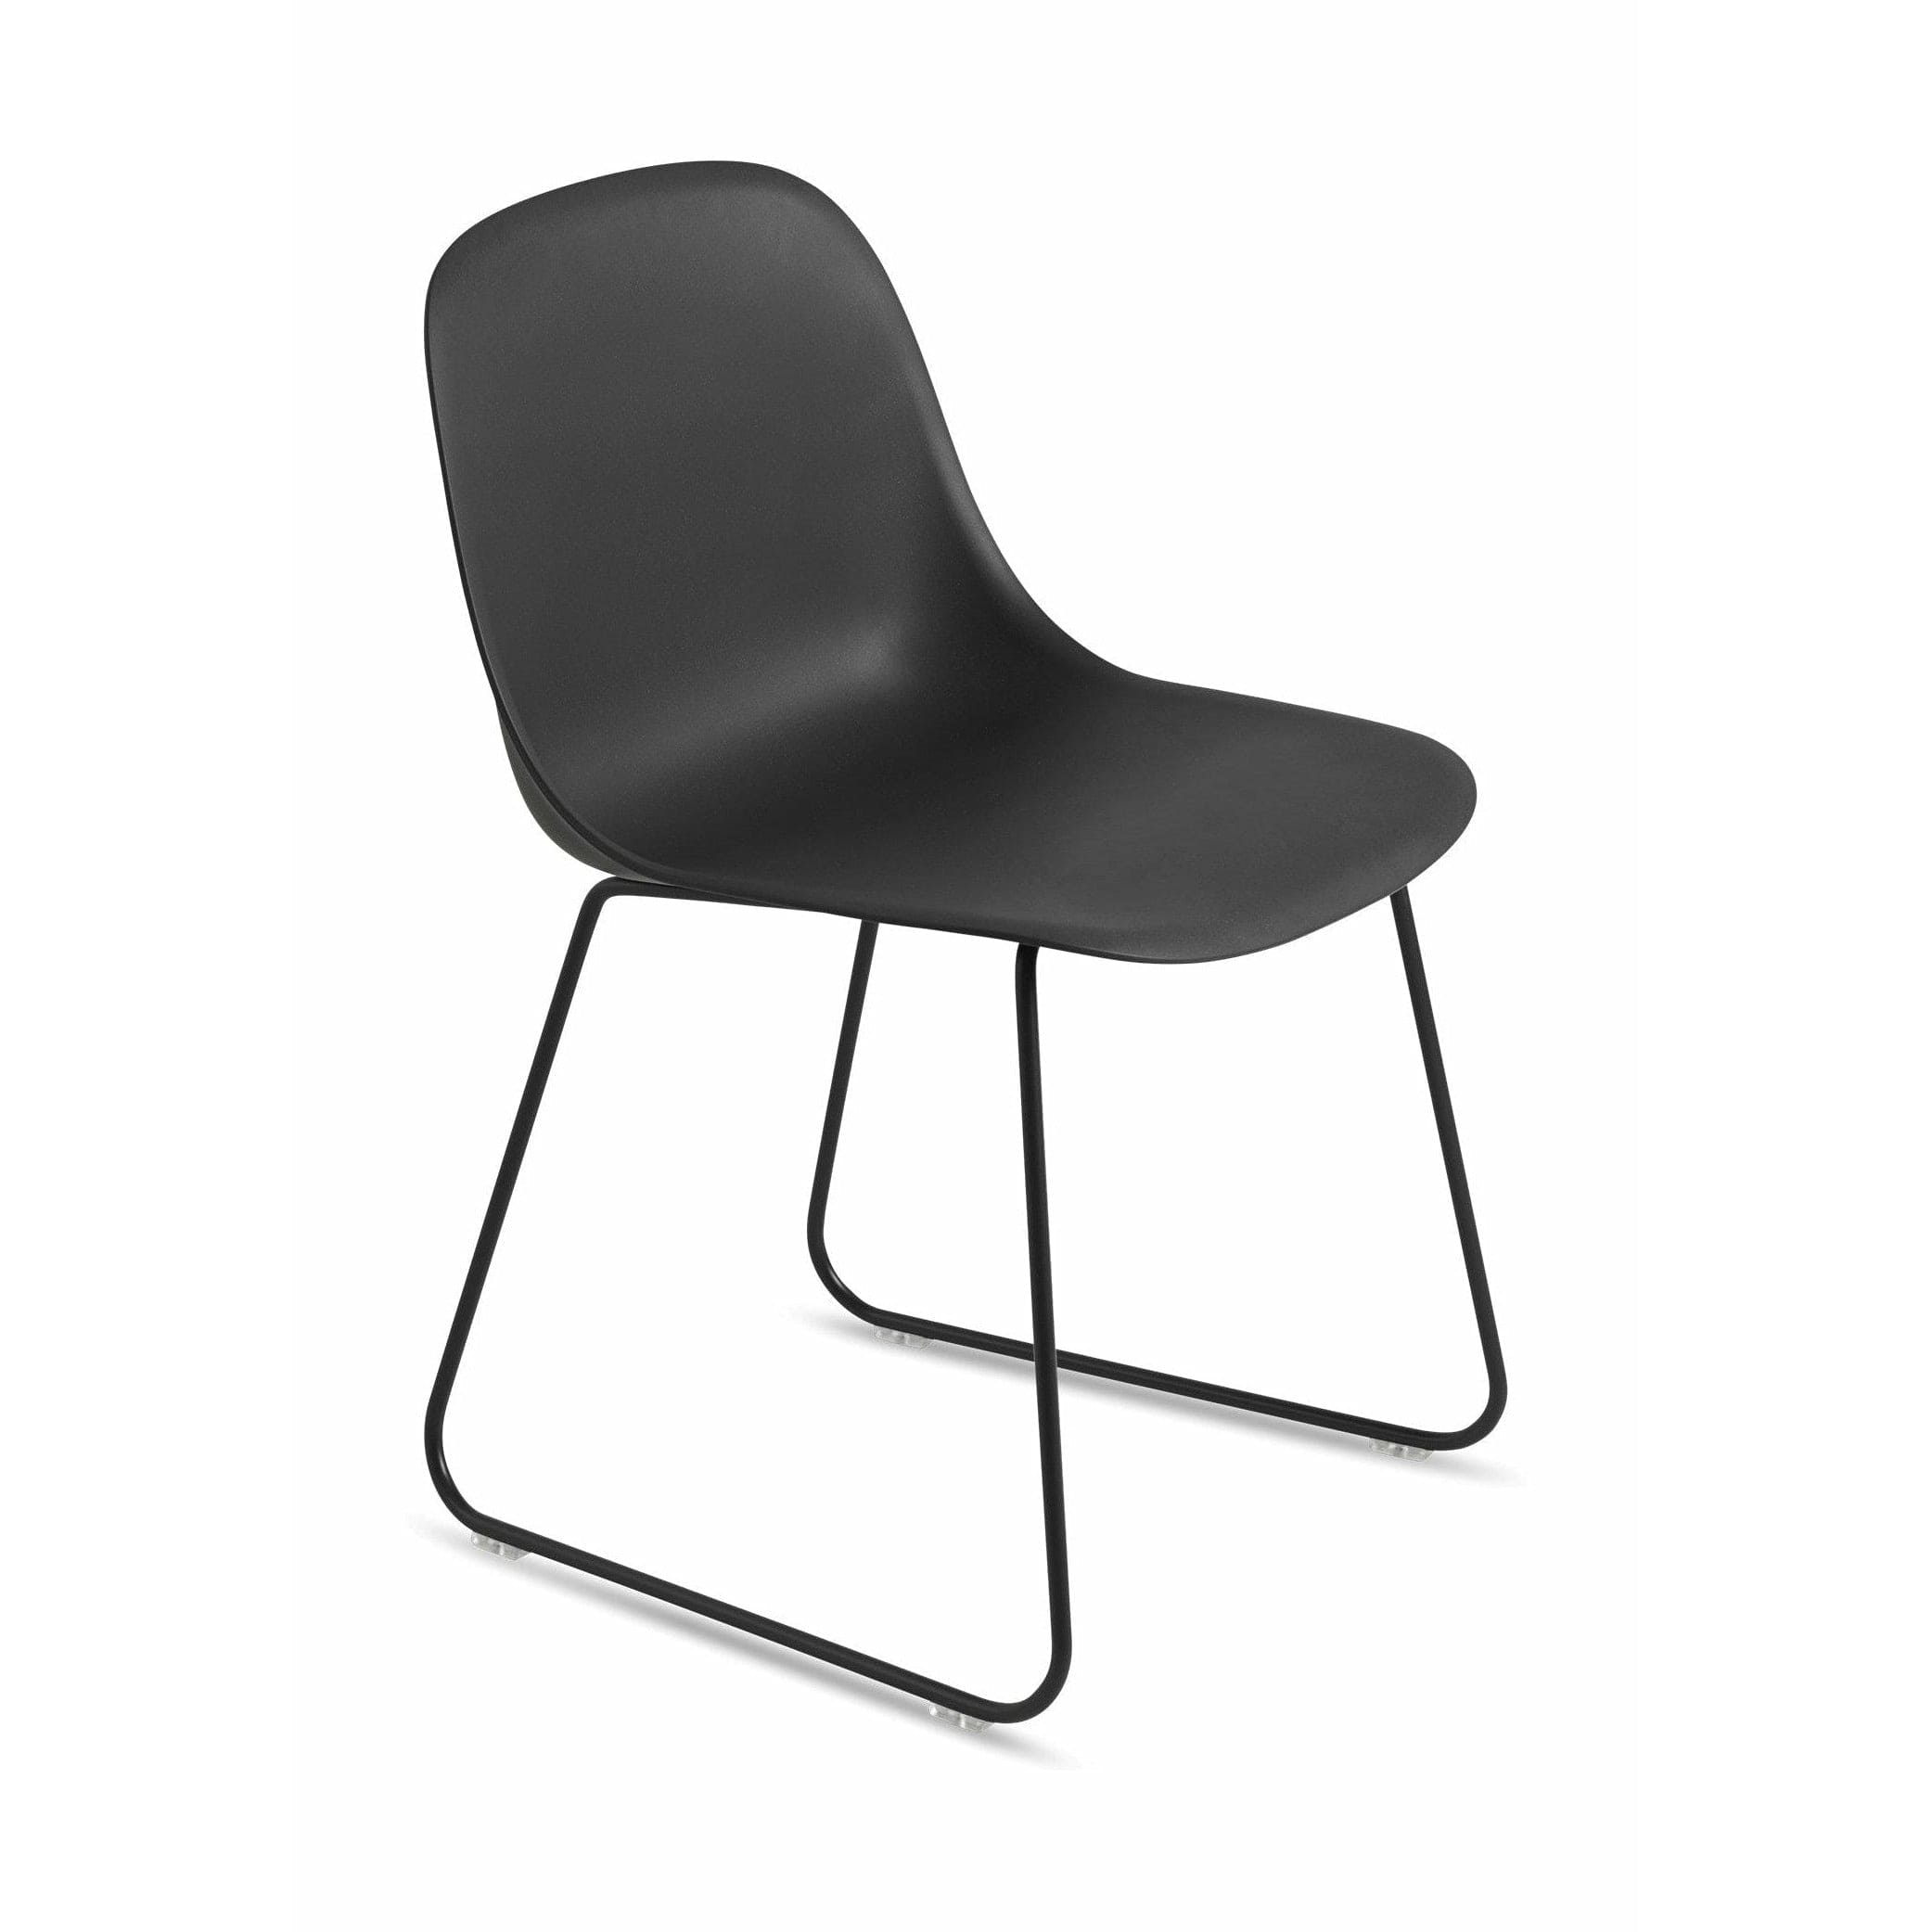 Muuto Fiber Side -stol gjord av återvunnen plastsläd, svart/svart